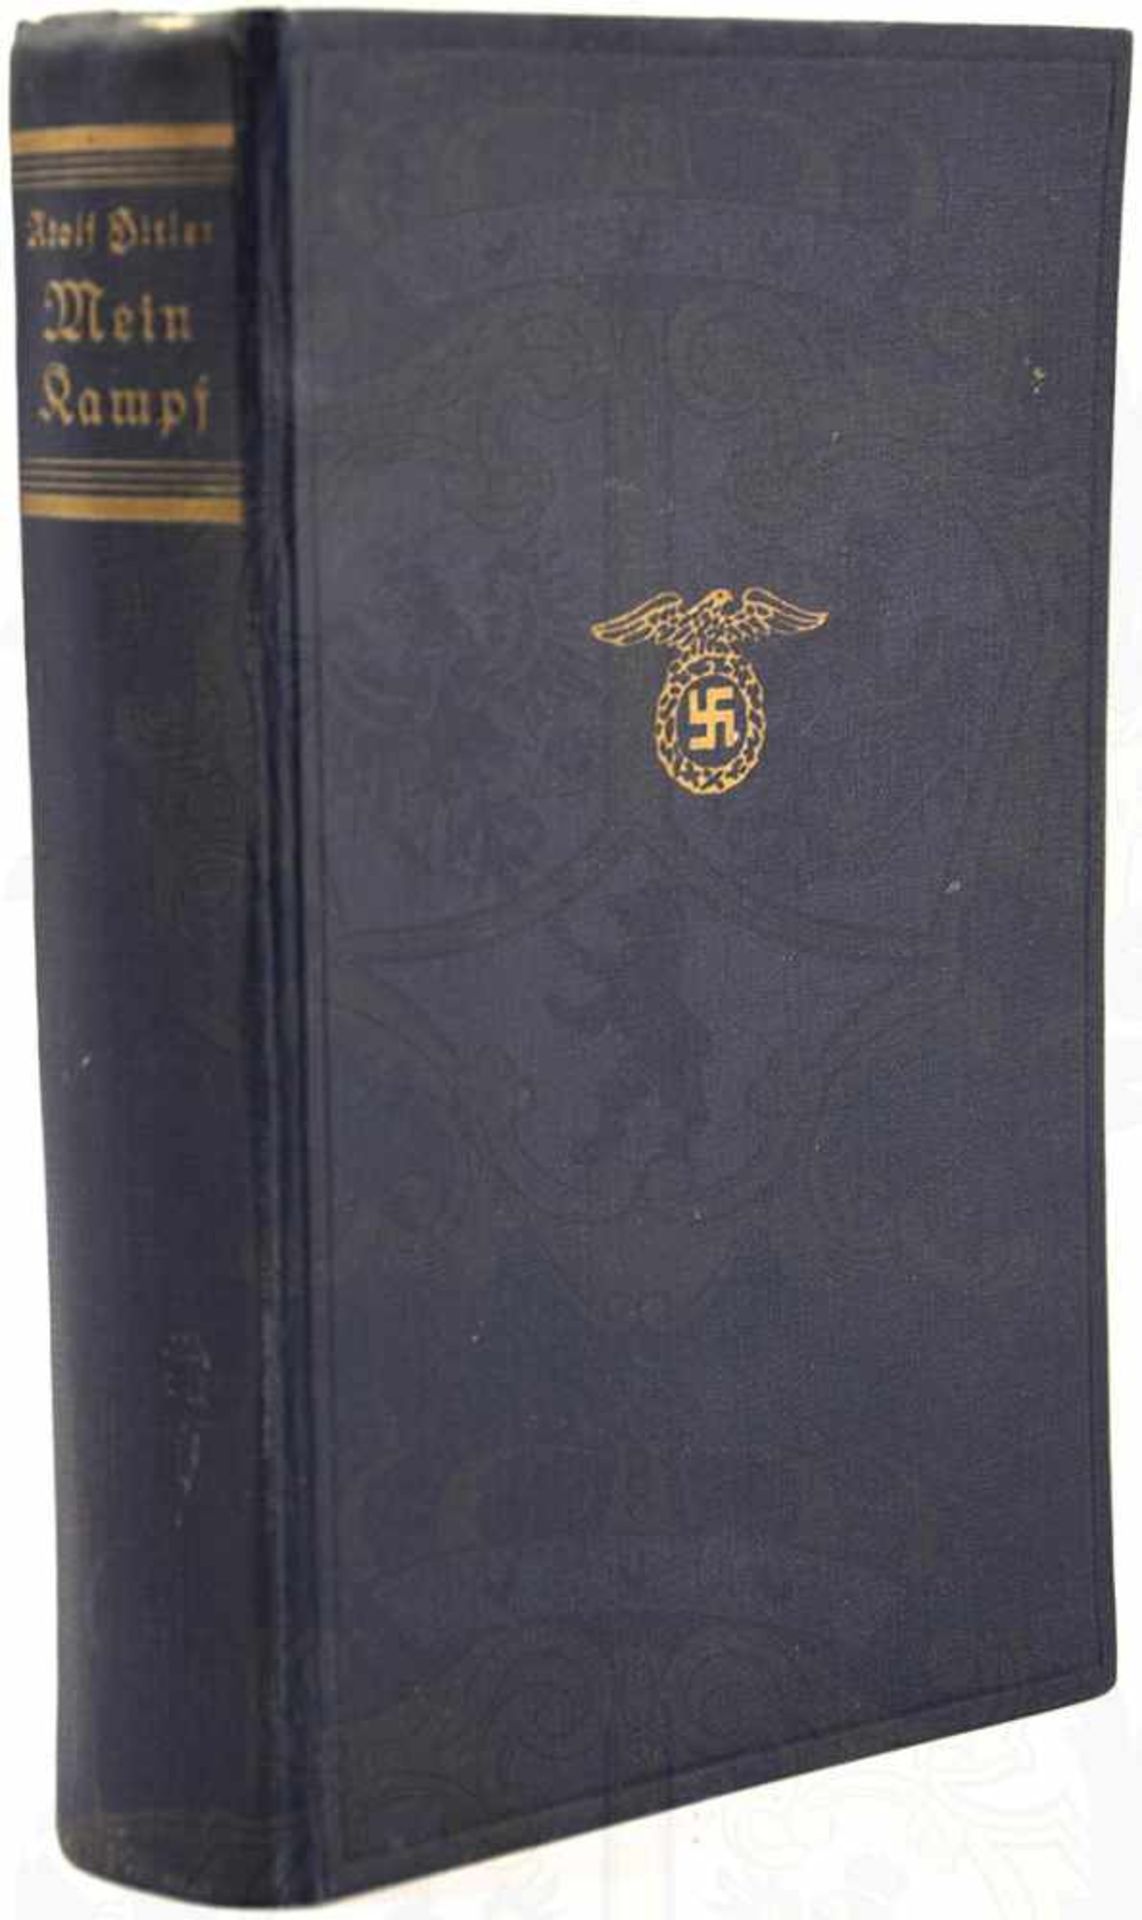 MEIN KAMPF, Adolf Hitler, Volksausgabe, Eher-Verlag, 178.-180. Tsd., München 1936, 781 S., 1